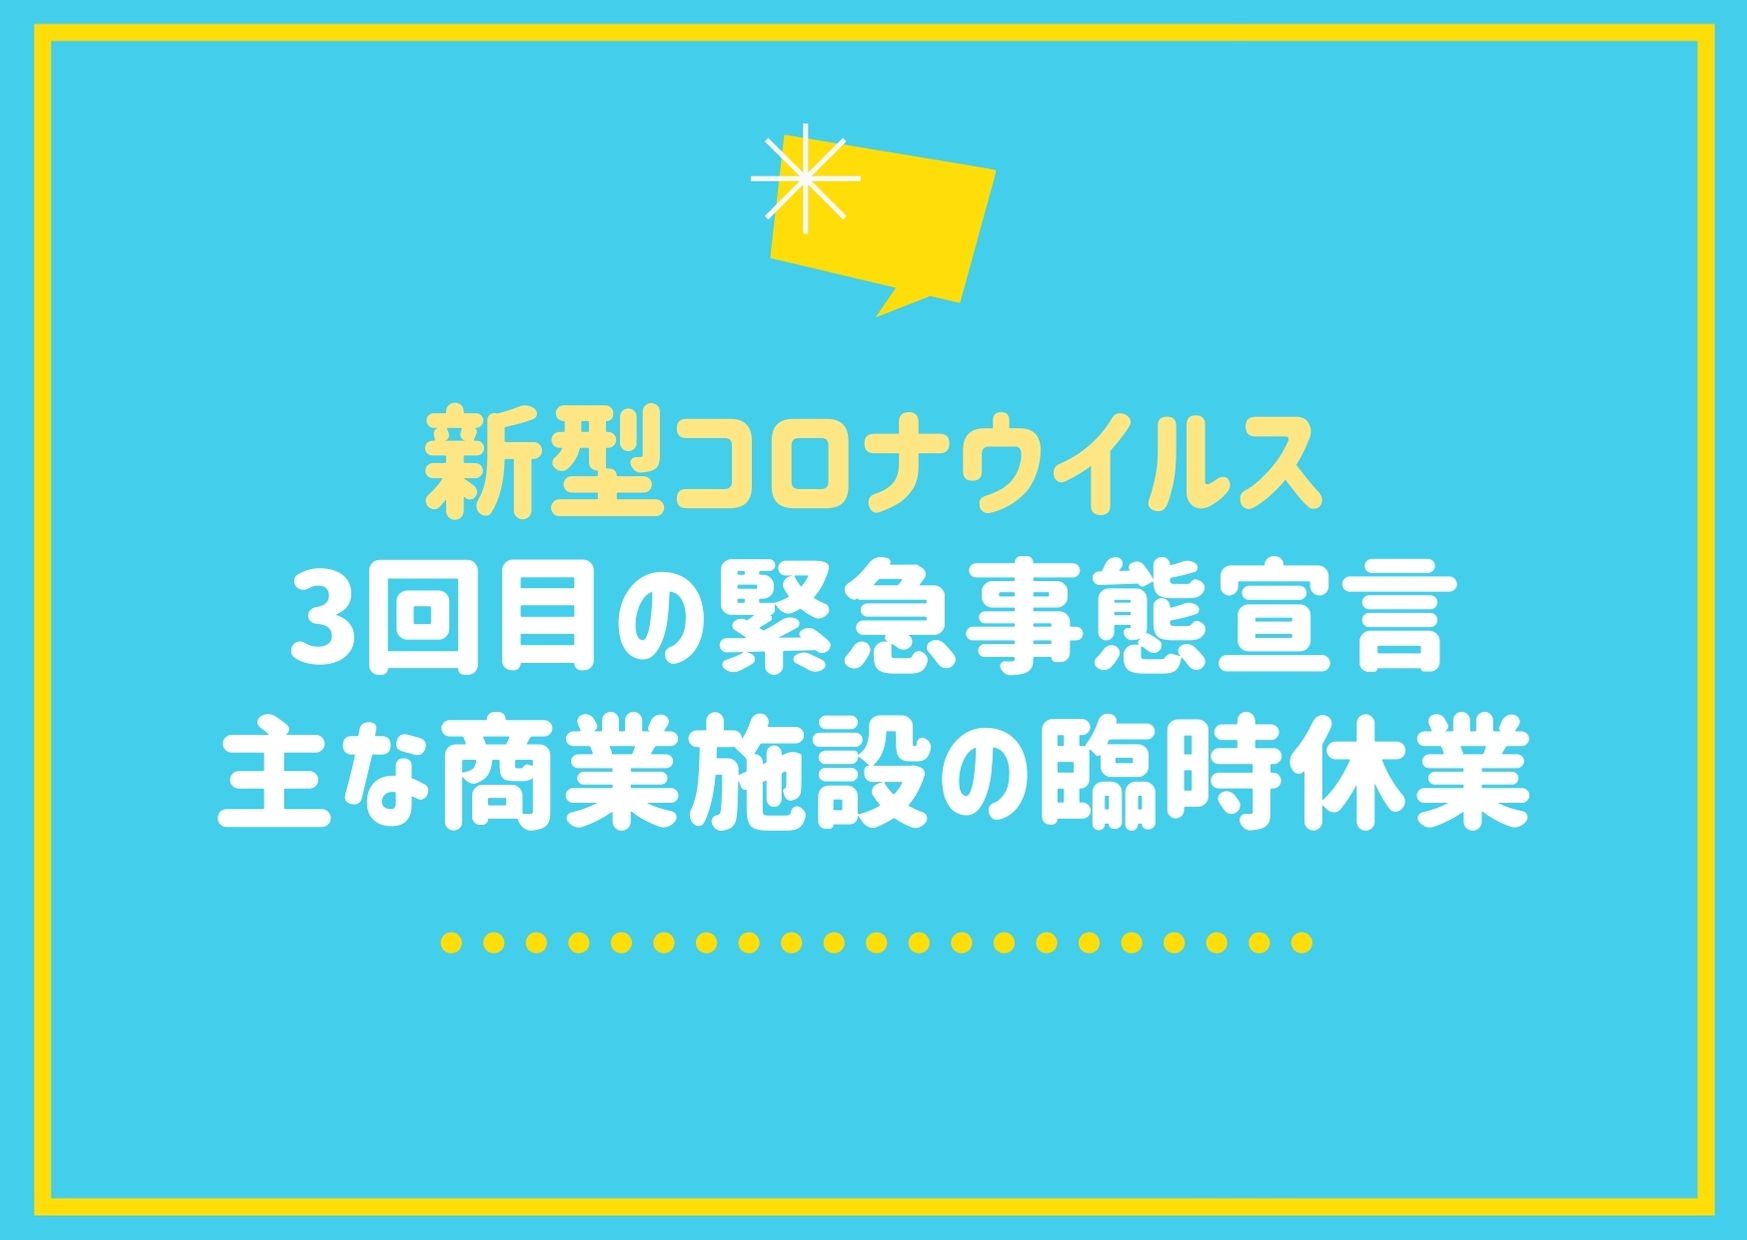 神戸の主な百貨店 商業施設の臨時休業一覧 コロナ感染拡大防止の緊急事態宣言